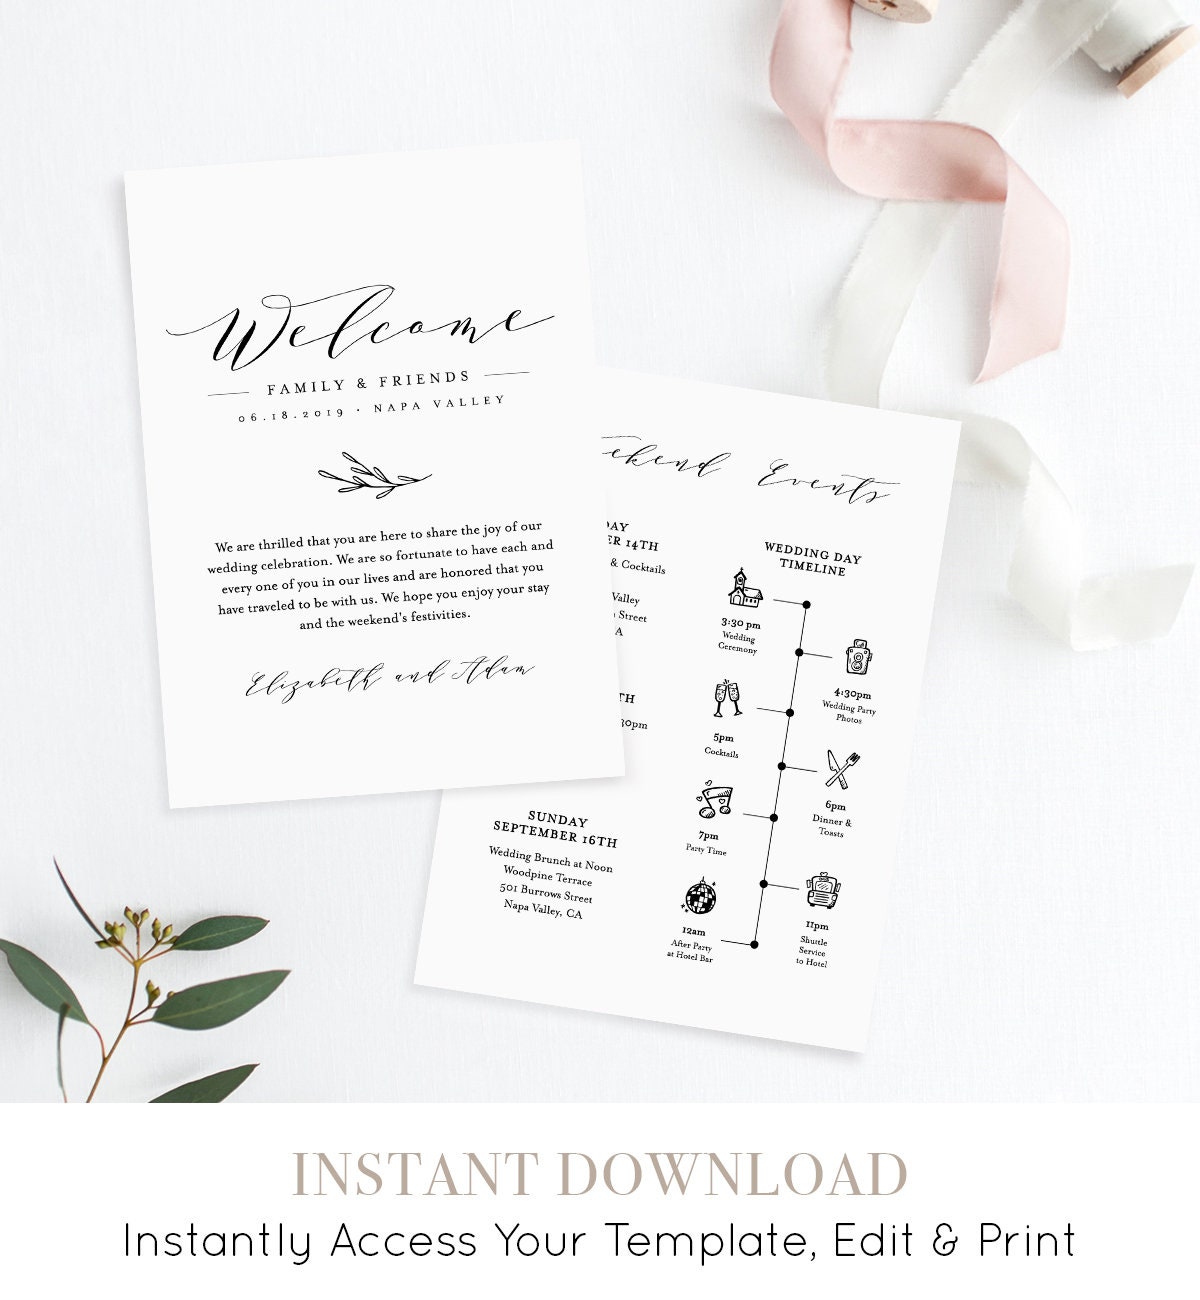 Wedding Welcome Bag Note & Timeline : r/weddingstationery